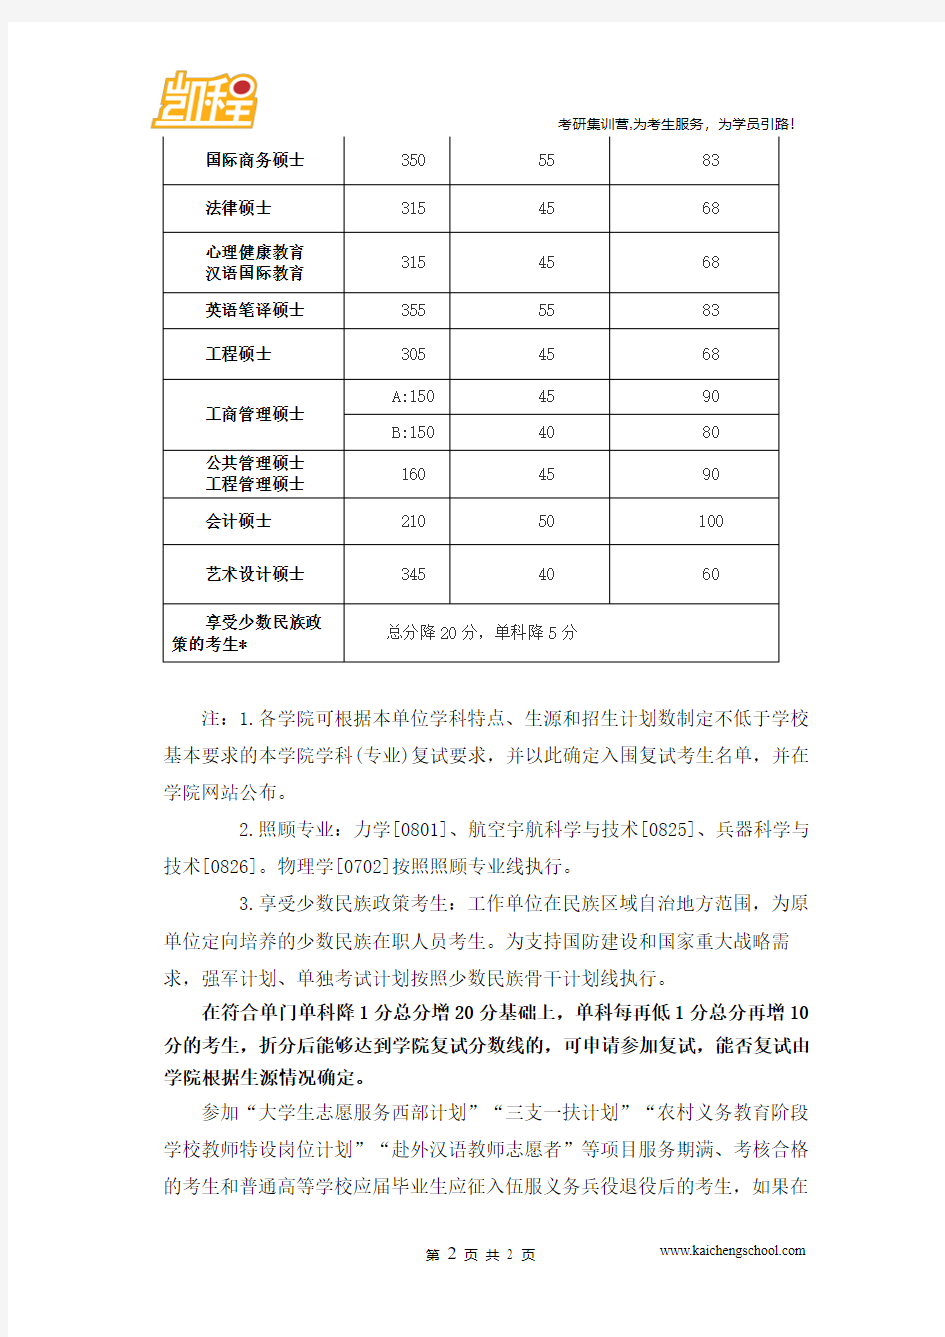 2015年北京理工大学英语笔译硕士考研复试分数线是355分